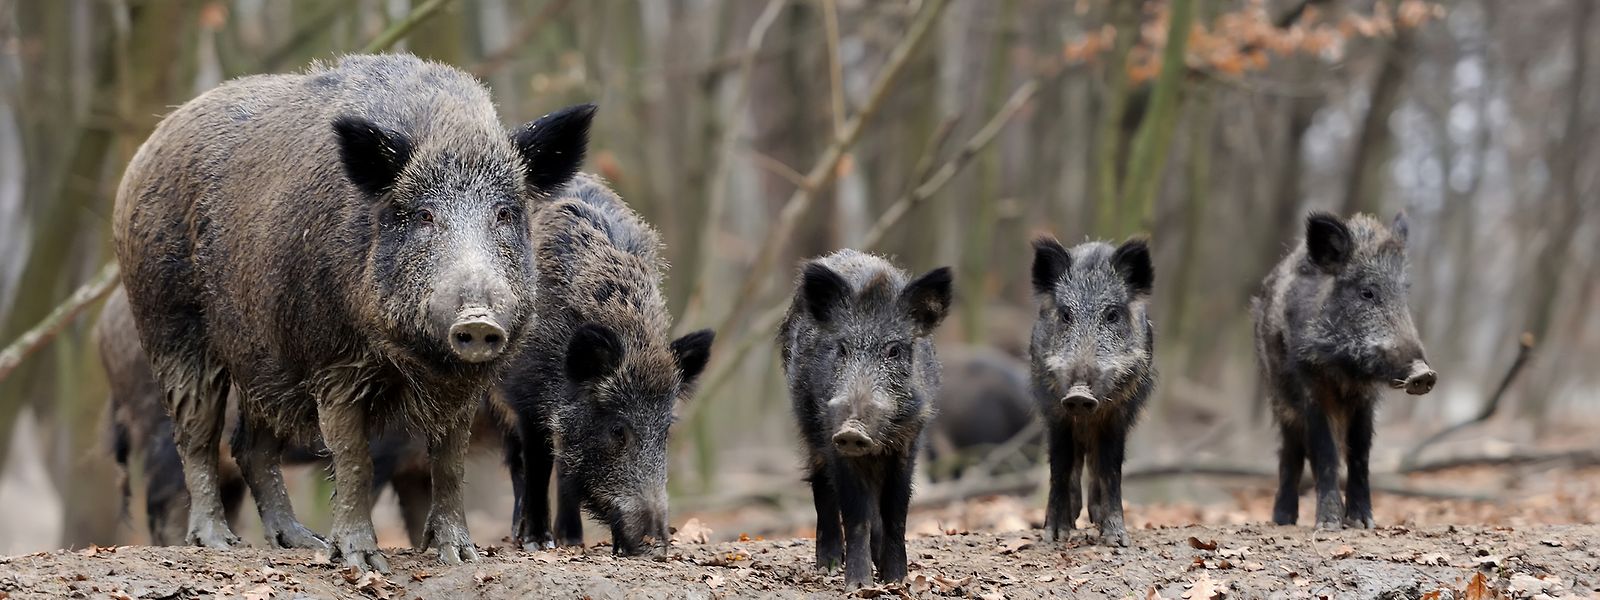 A taxa de reprodução dos javalis é de cerca de 250%. Onde hoje vivem 100 porcos-bravos, no ano seguinte haveria 350, se a caça não fosse praticada.